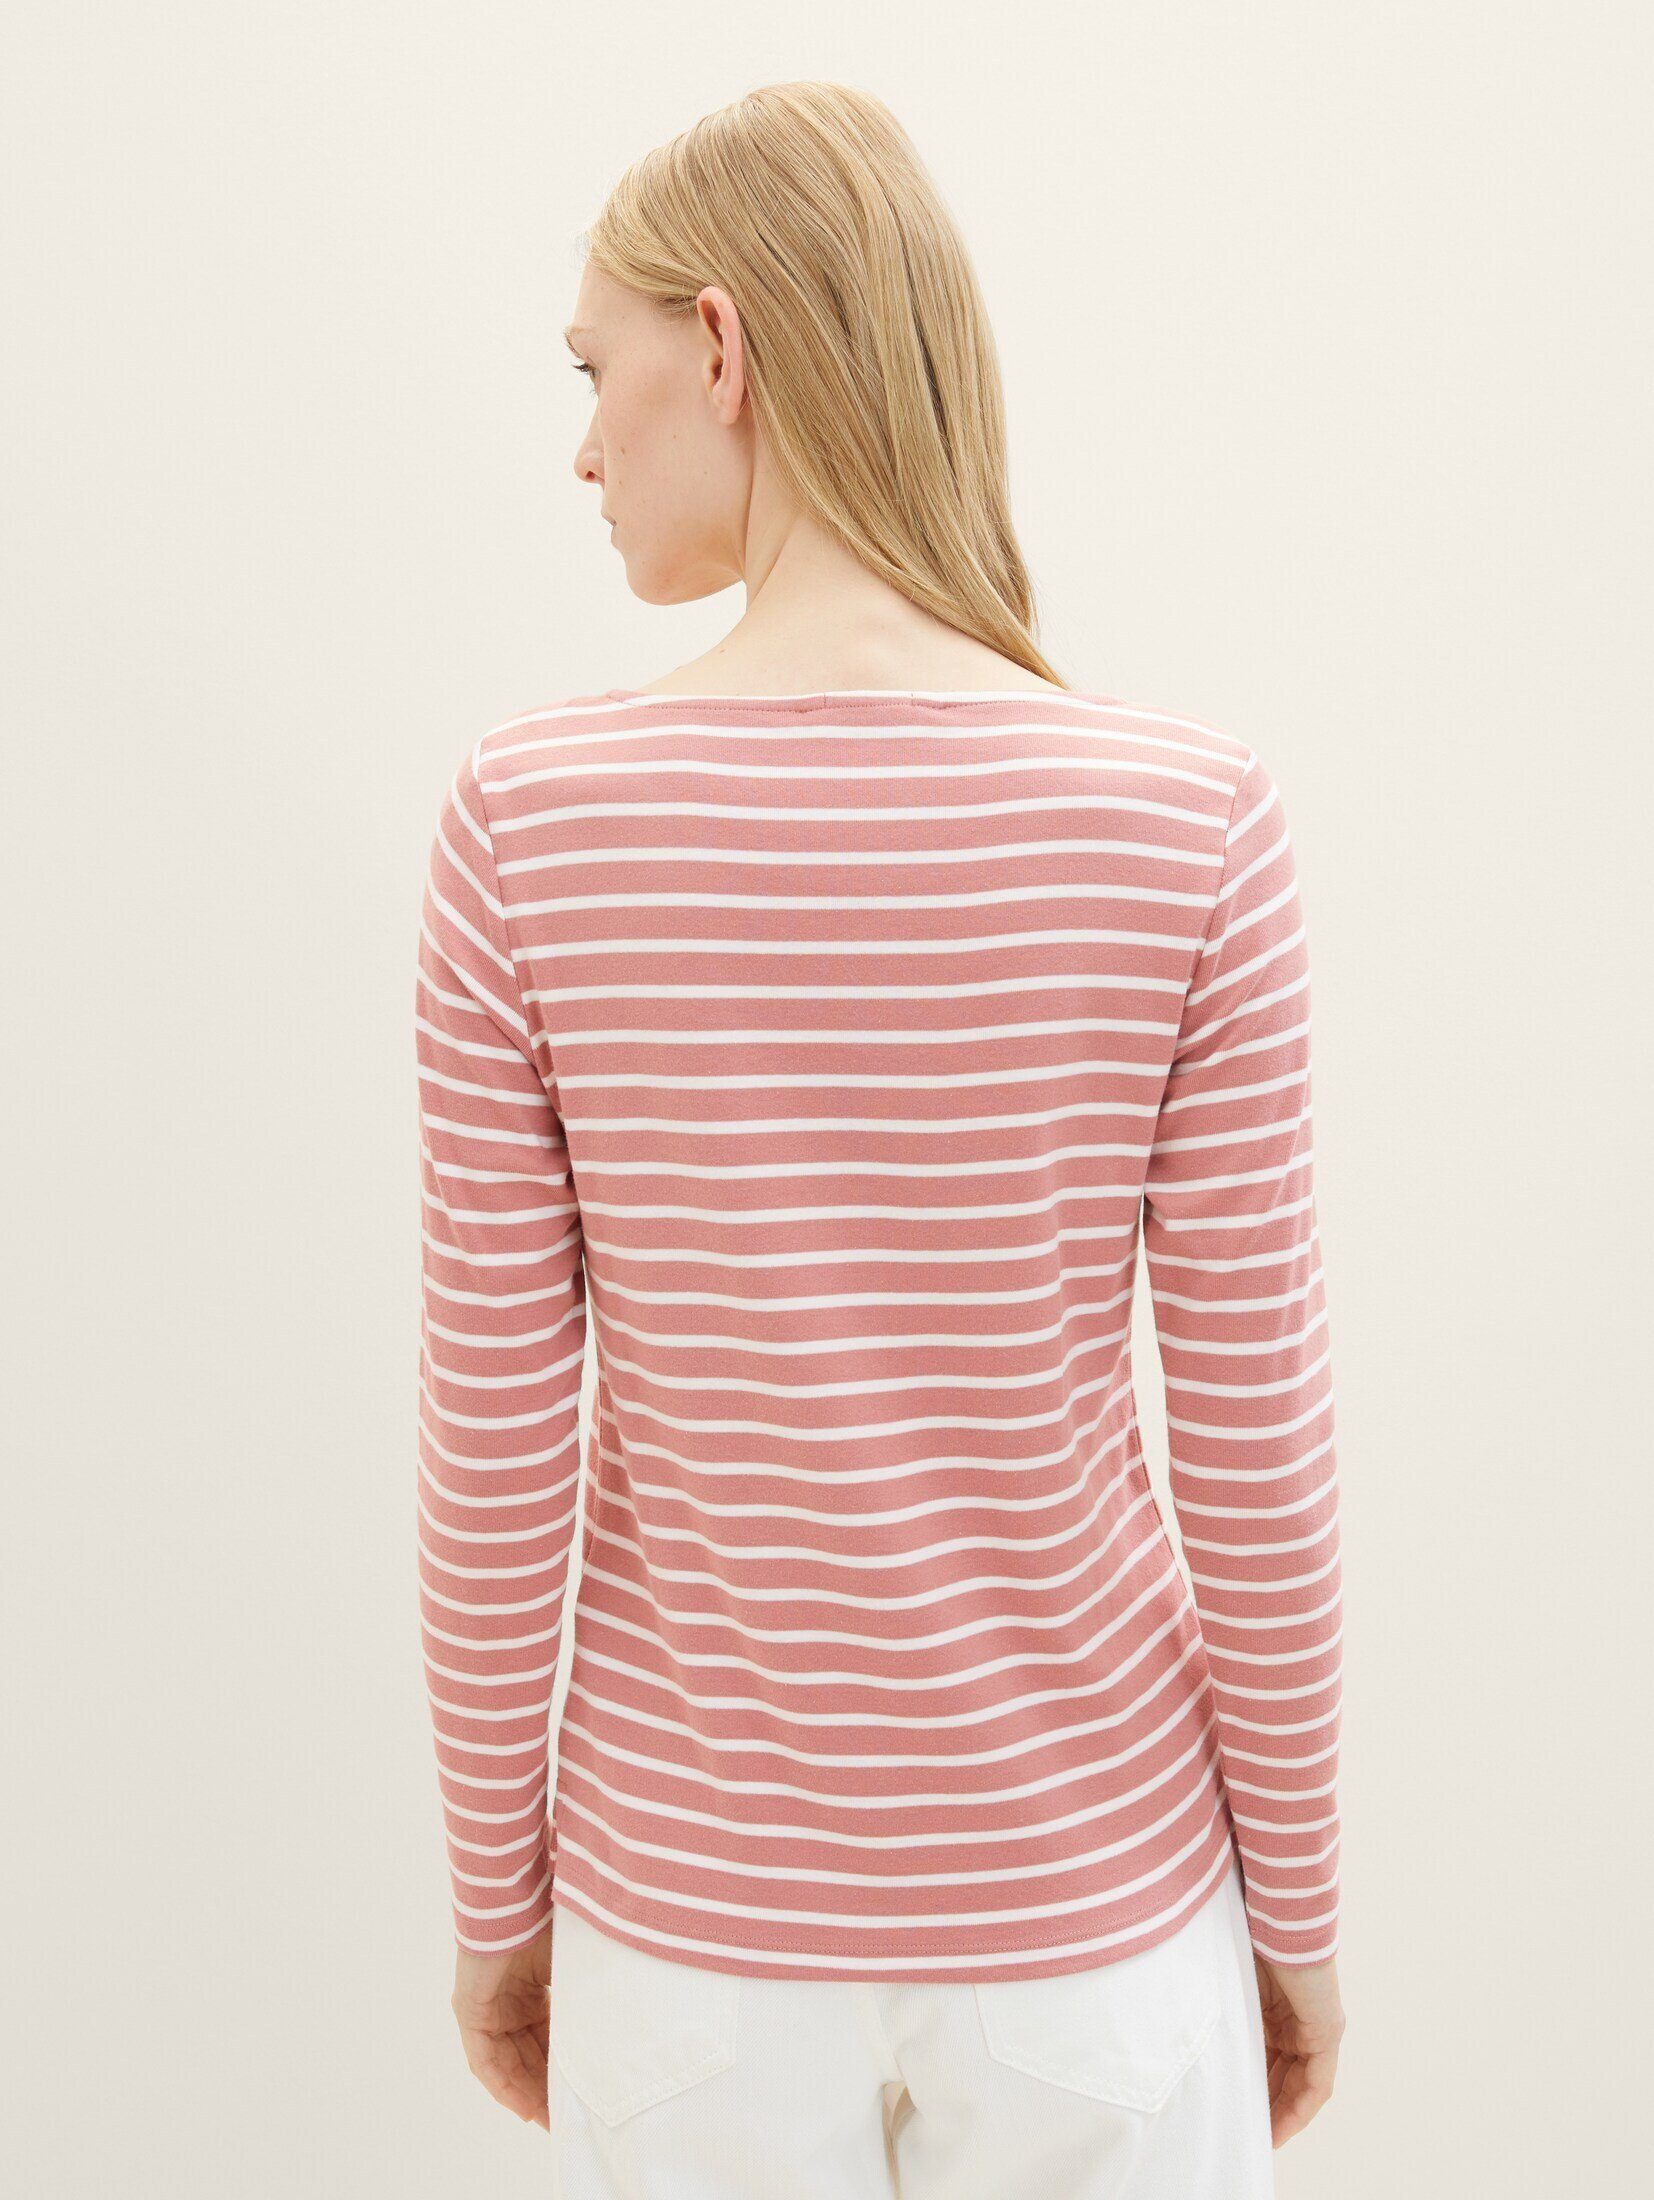 Streifenmuster rose offwhite stripe Langarmshirt TAILOR TOM mit T-Shirt